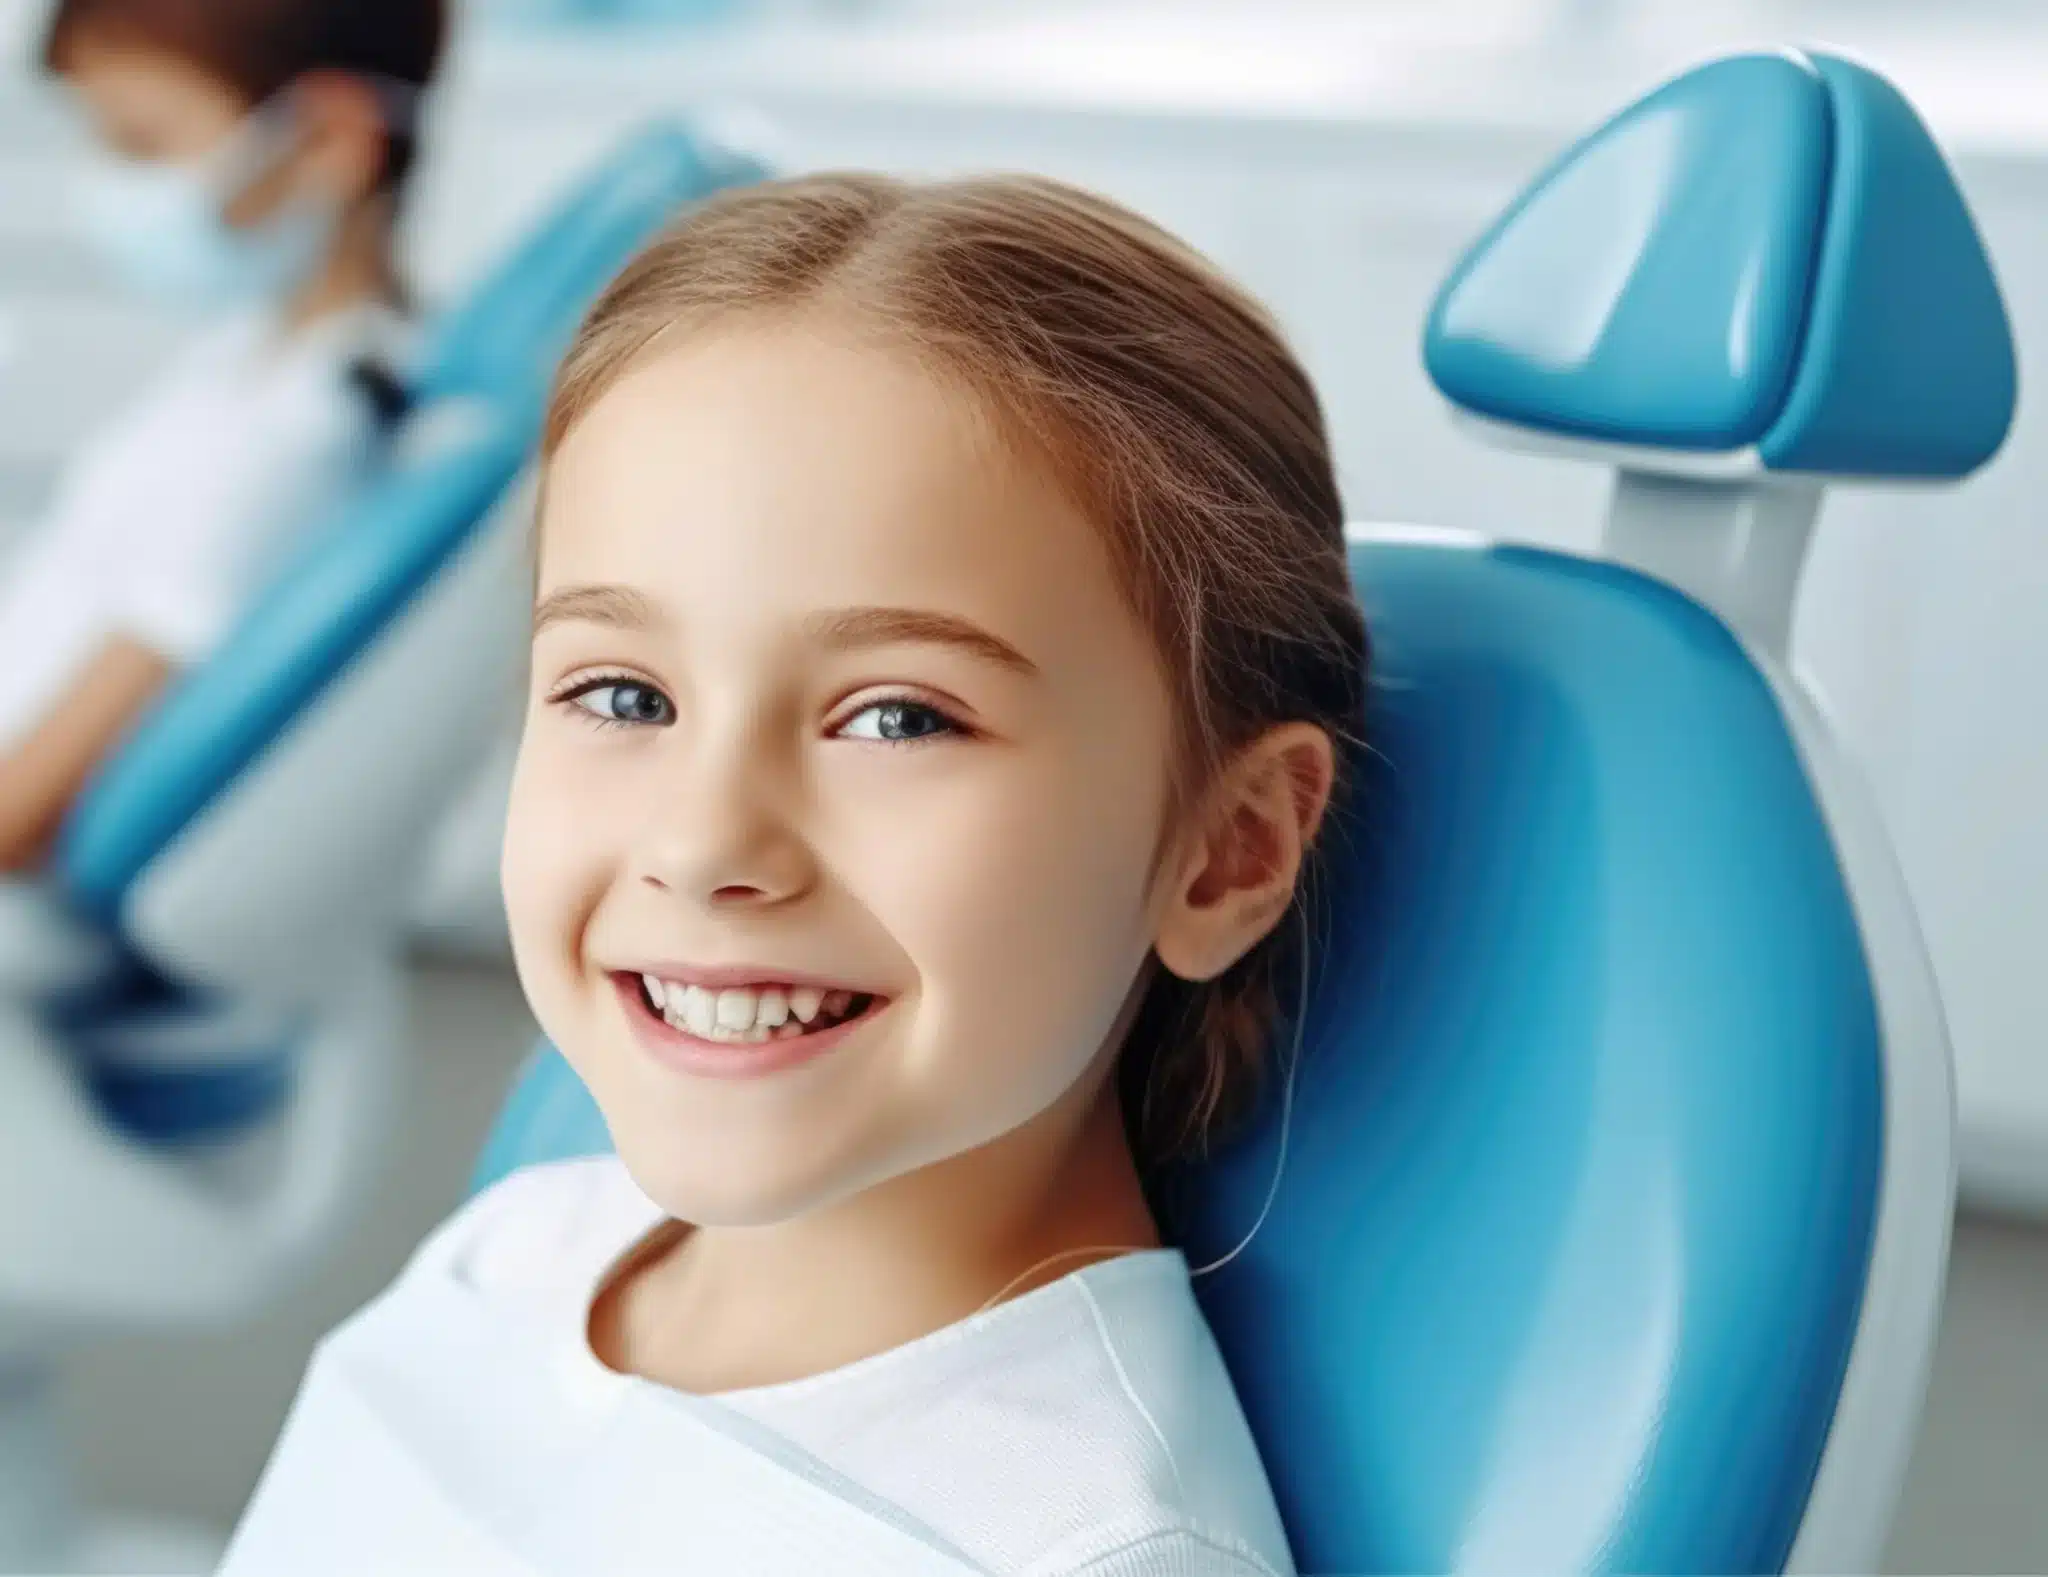 دندانپزشکی کودکان چیست و شامل چه خدماتی میشود؟